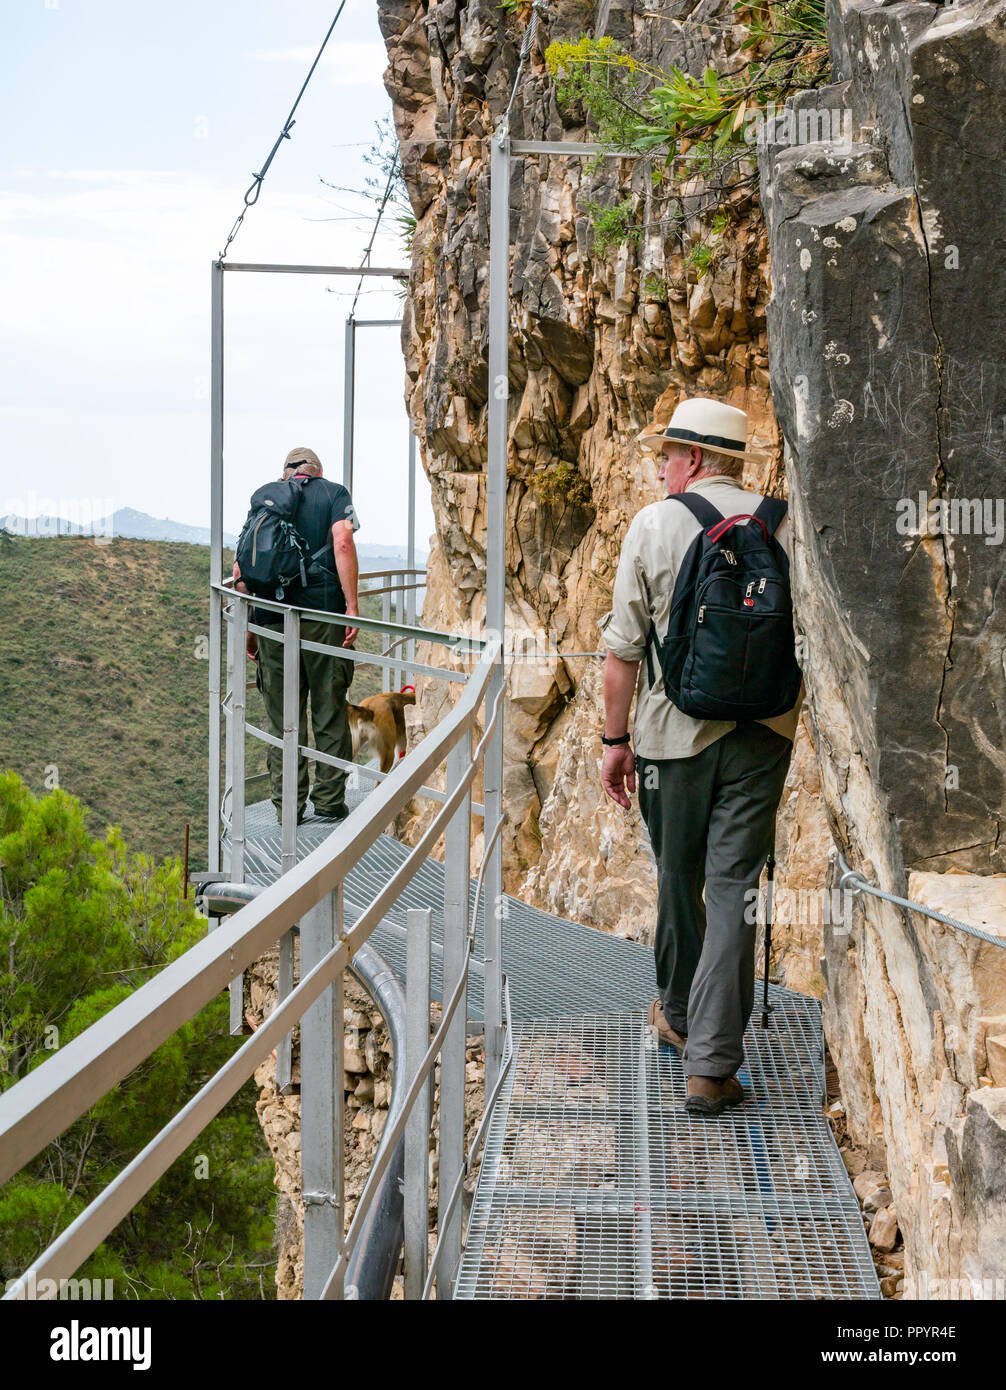 Los hombres mayores caminar sobre el desfiladero de montaña acantilado pasarela metálica, Parque Natural Sierras de Tejeda, Axarquía, Málaga, Andalucía Foto de stock